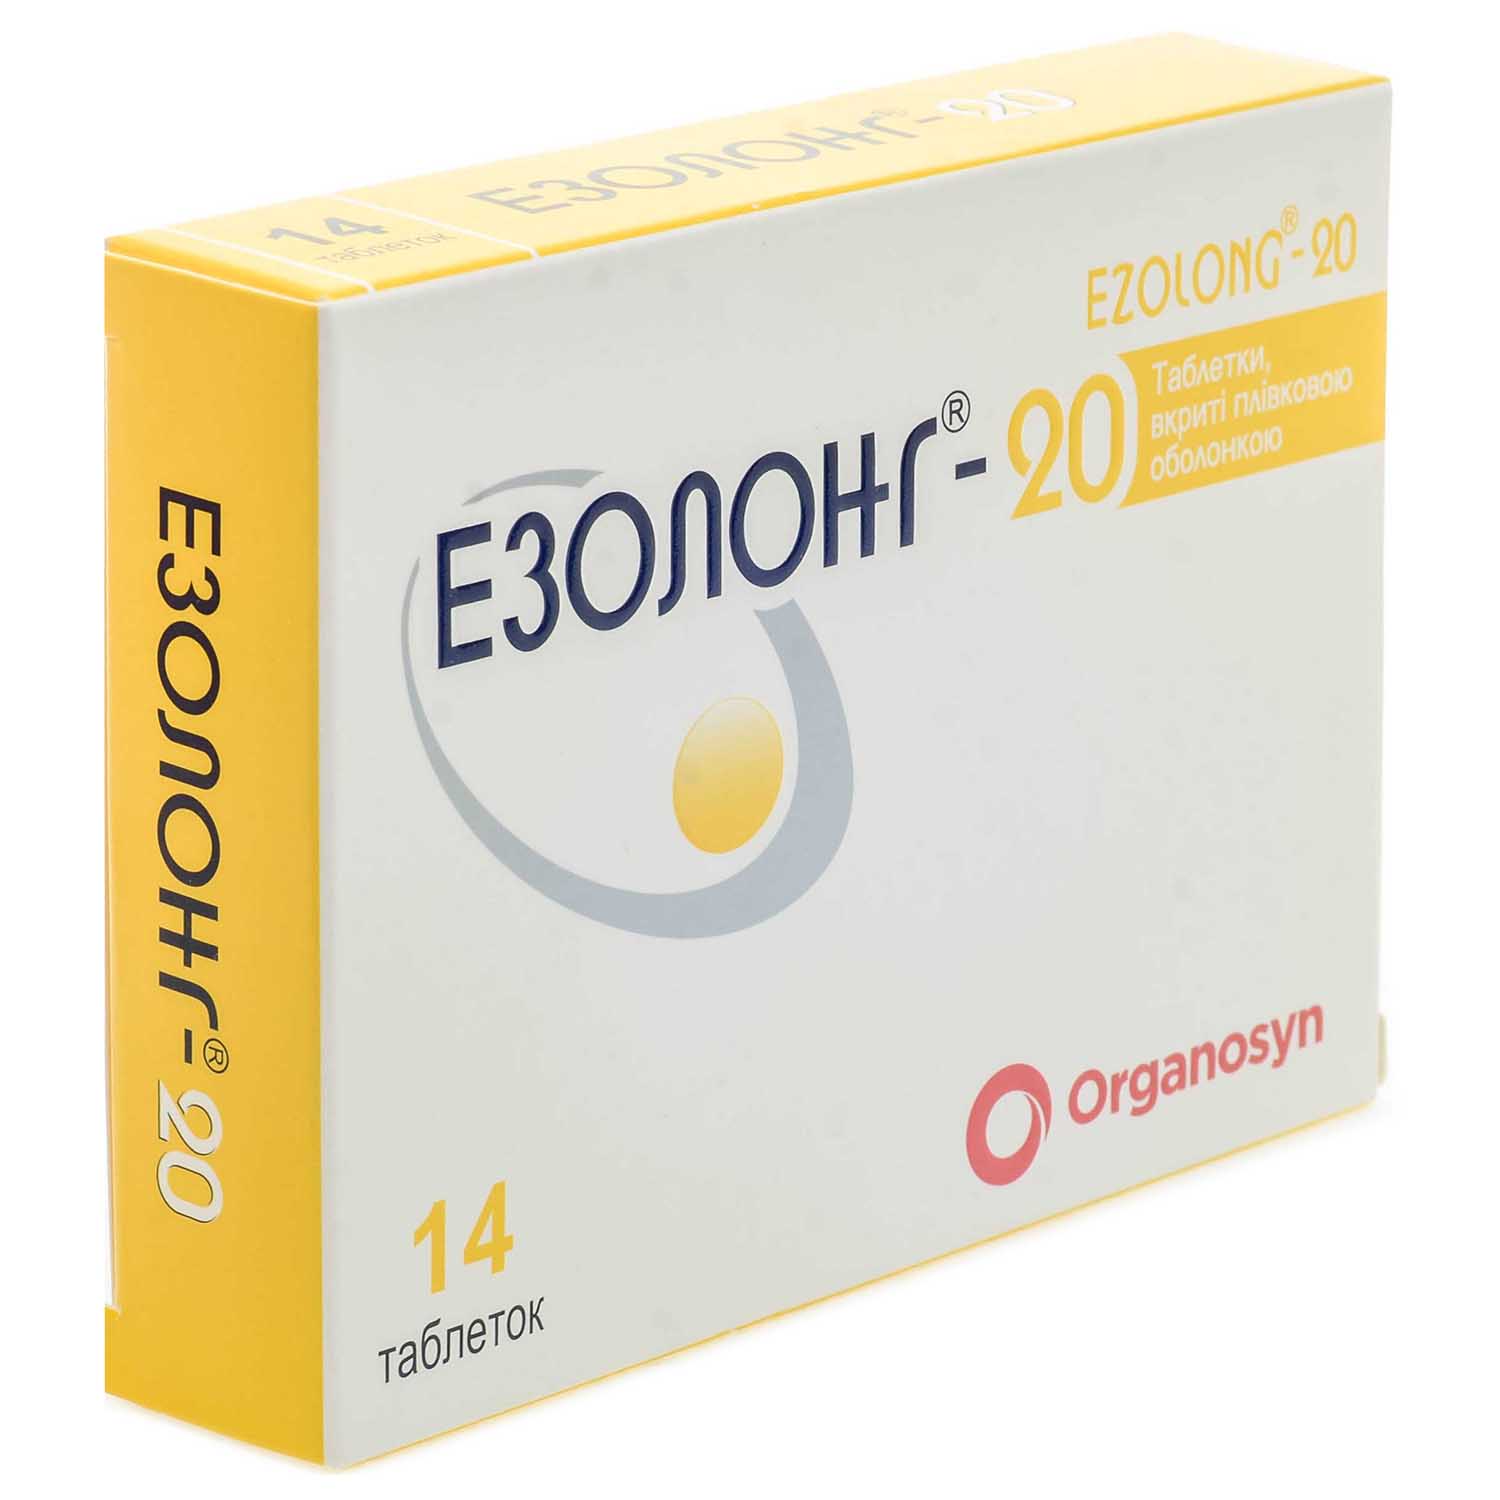 ЕЗОЛОНГ-20 інструкція, аналоги, ціна в аптеках, показання .